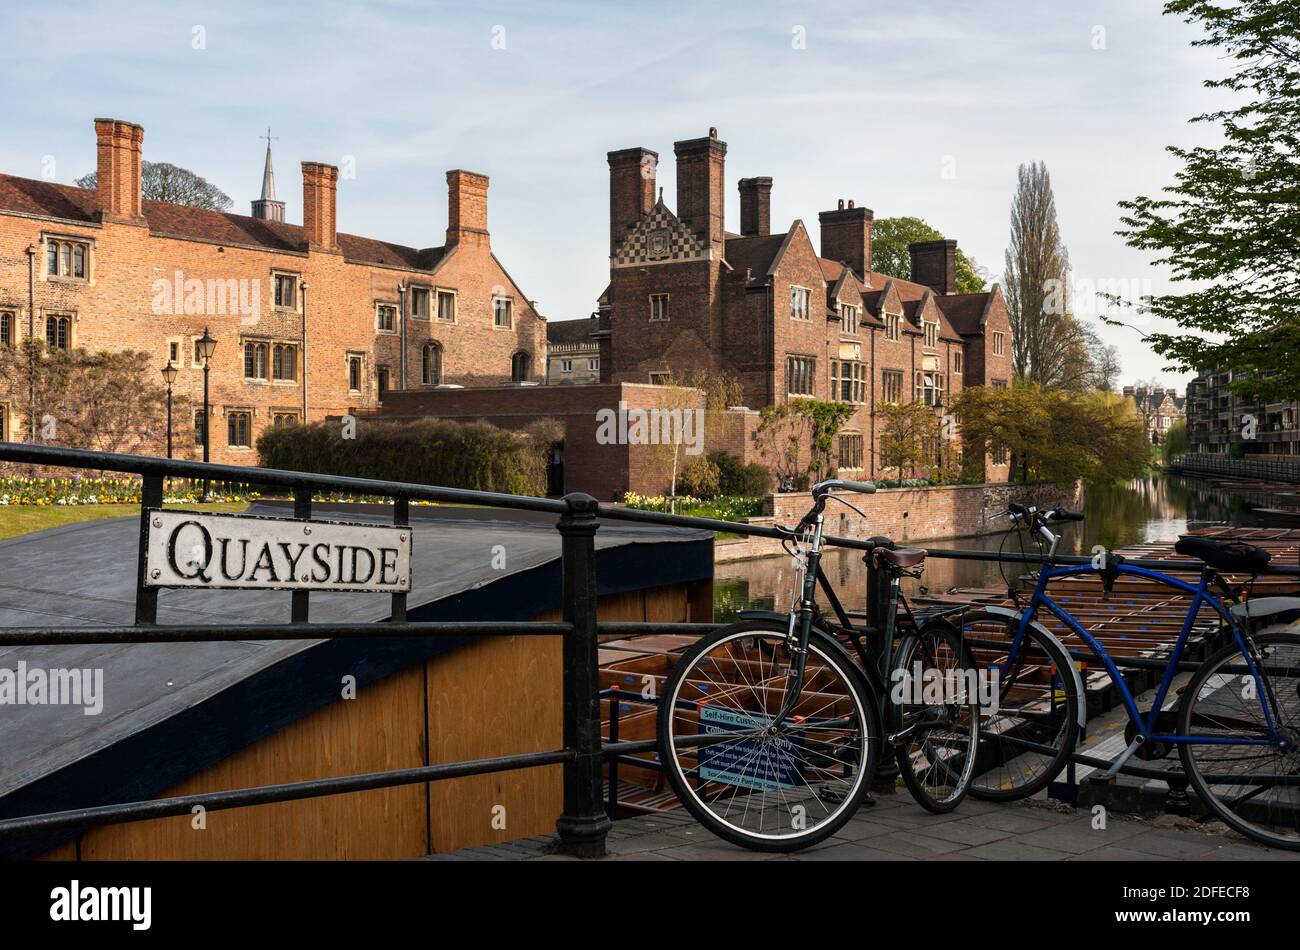 CAMBRIDGE, Reino Unido - 24 DE ABRIL de 2010: Vista de las bicicletas estacionadas en Quayside en Cambridge frente a Magdalene College con el cartel Foto de stock